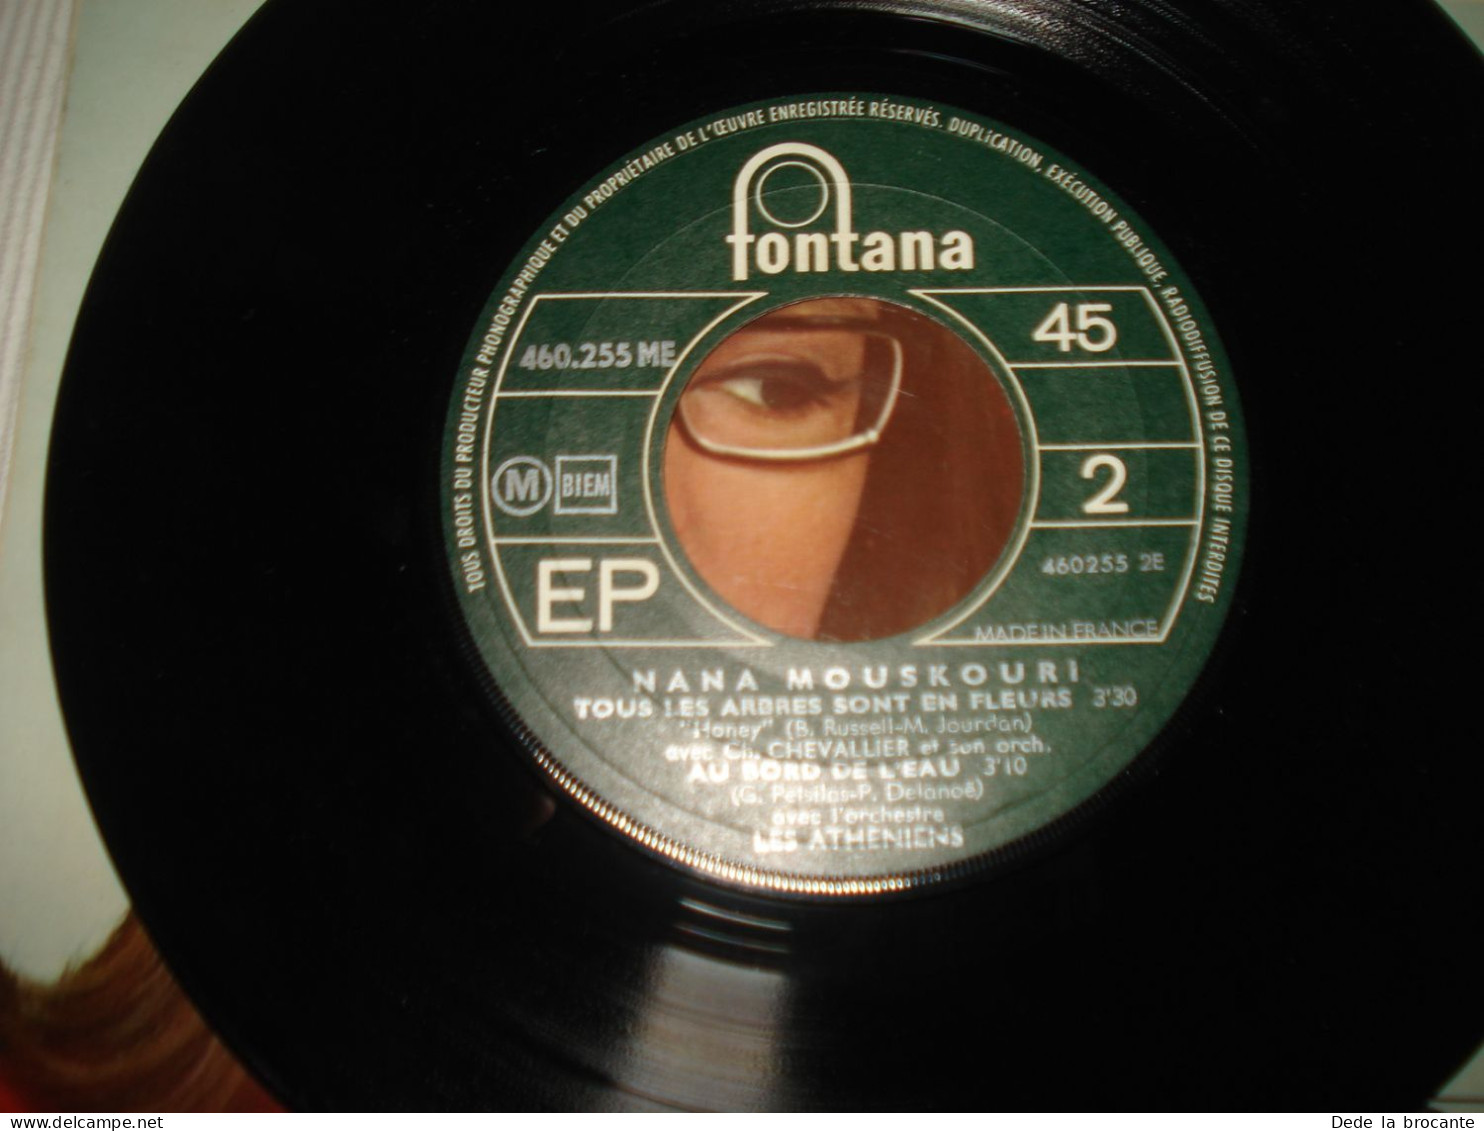 B13 / Nana Mouskouri – Coucourou Paloma - EP – 460 255 ME - Fr 1968  NM/NM - Formatos Especiales